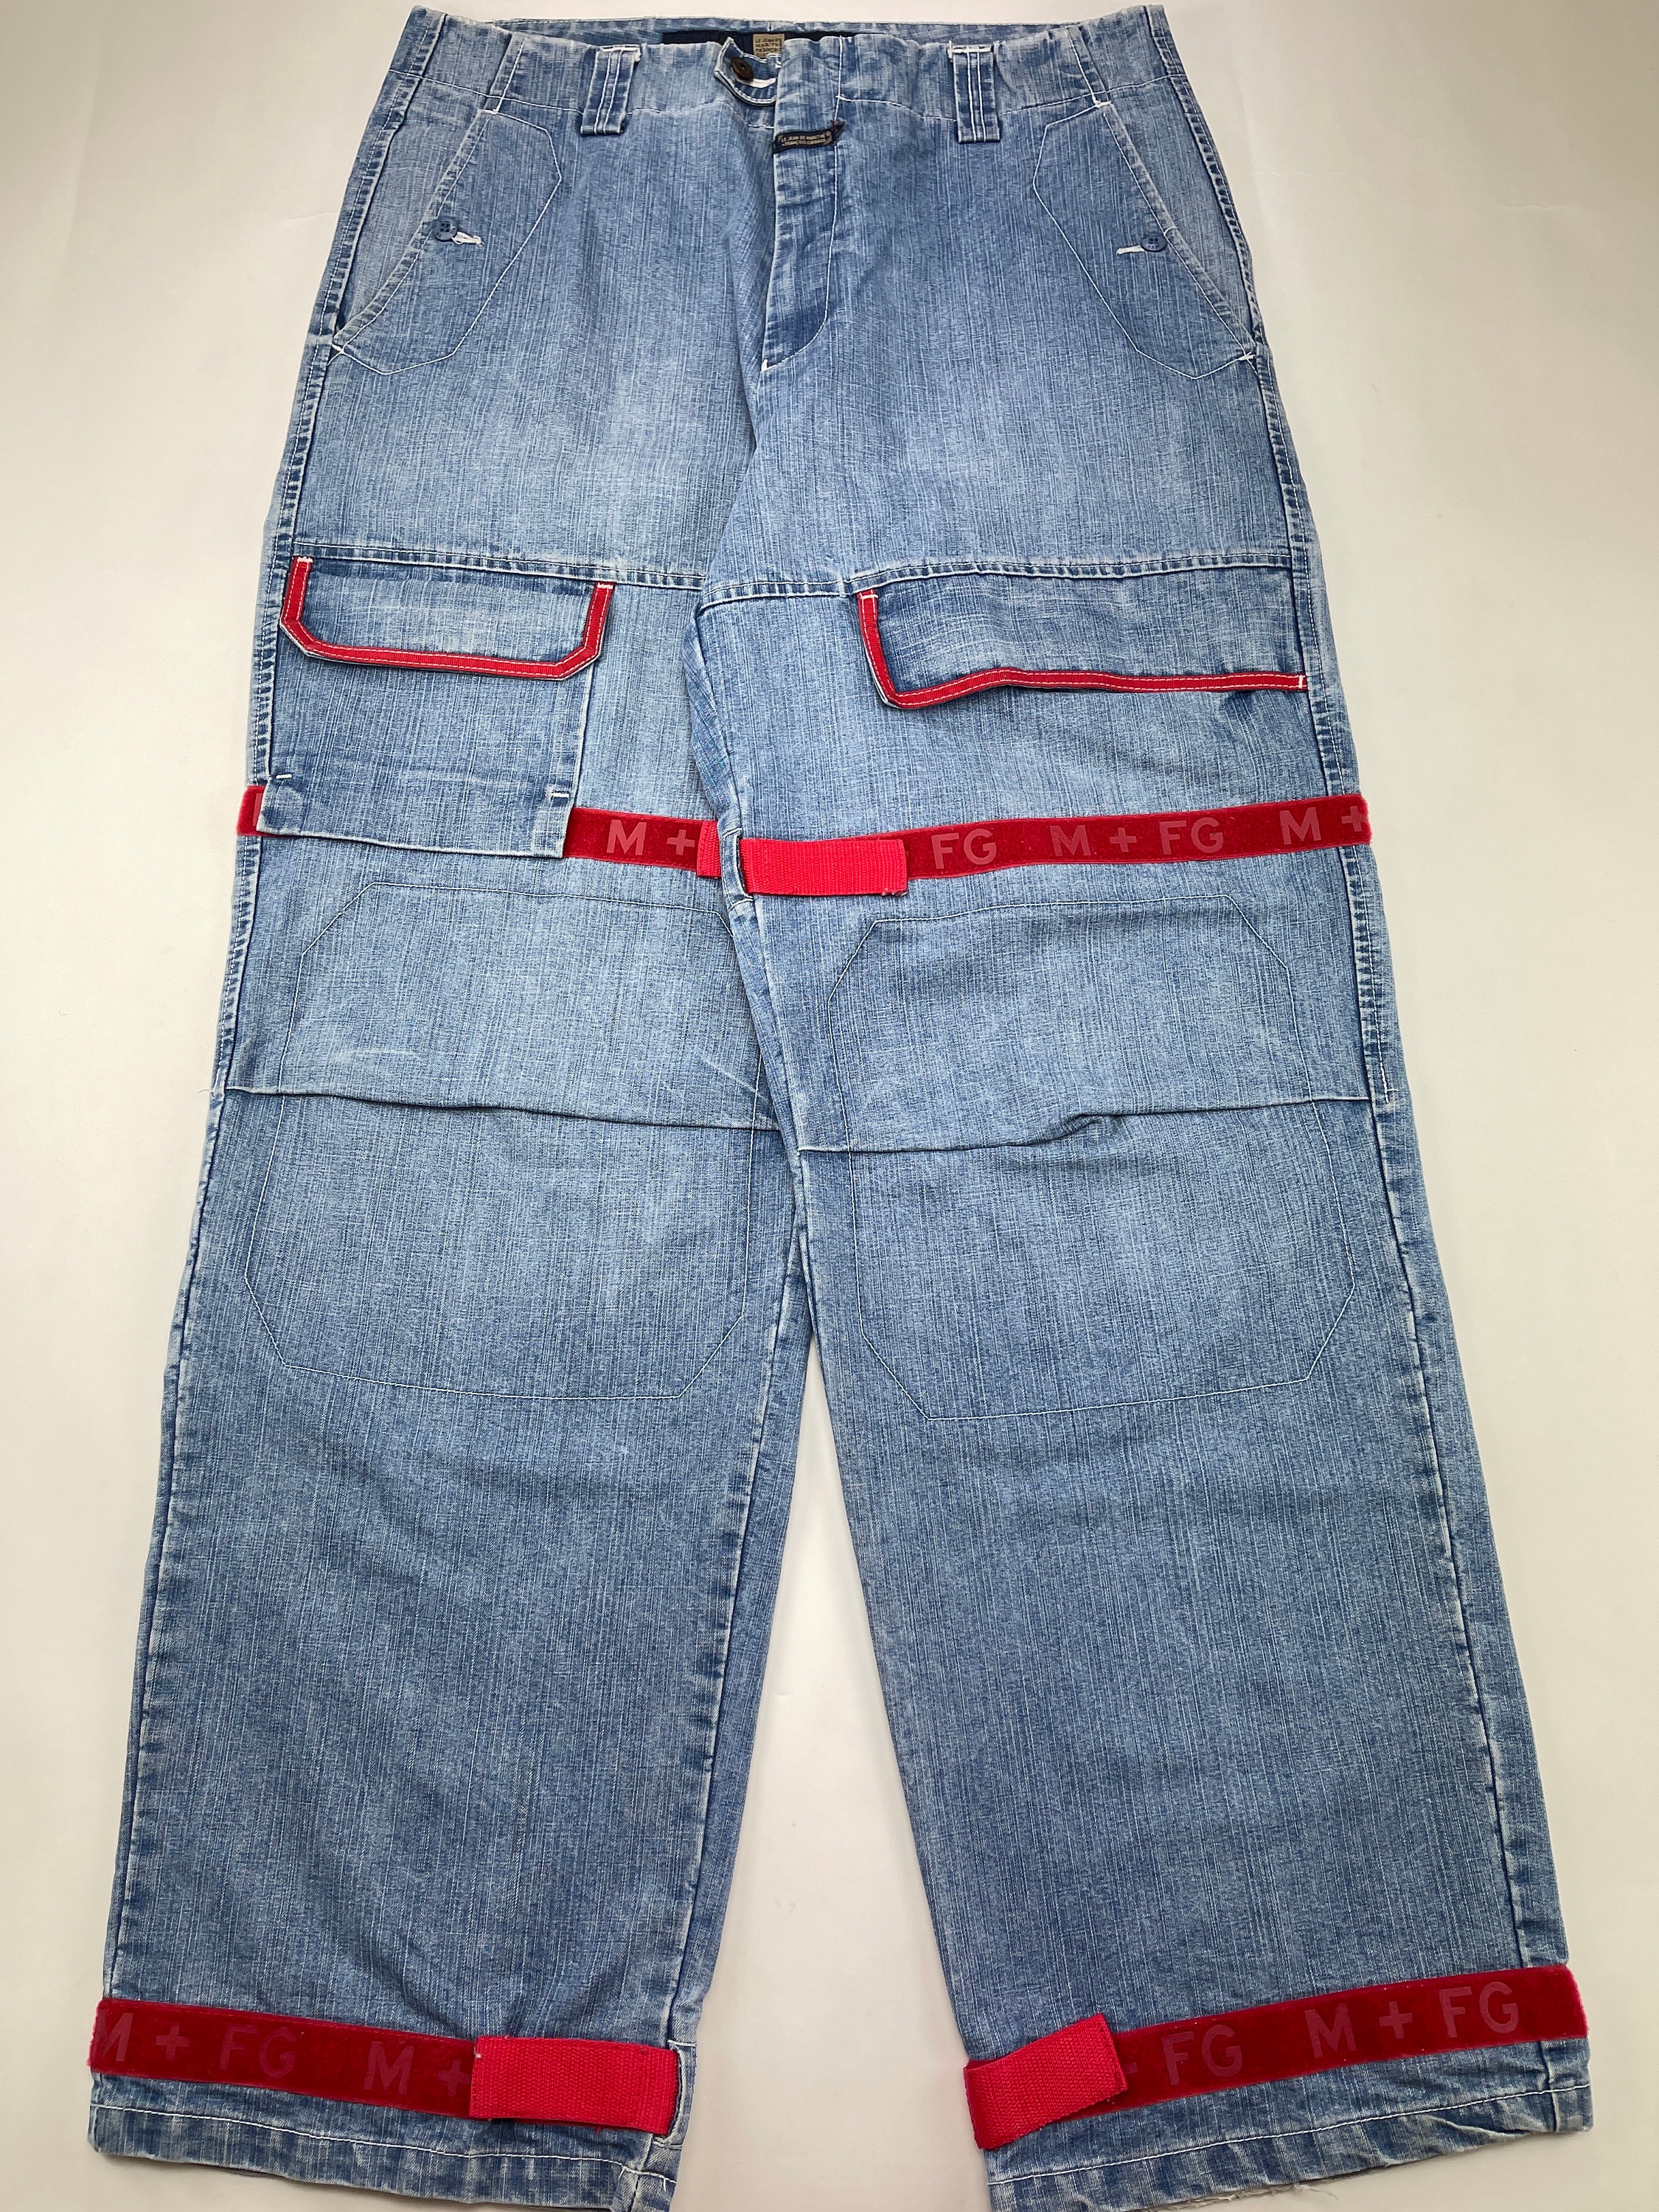 Marithe Francois Girbaud jeans vintage baggy jeans 90s hip - Etsy España